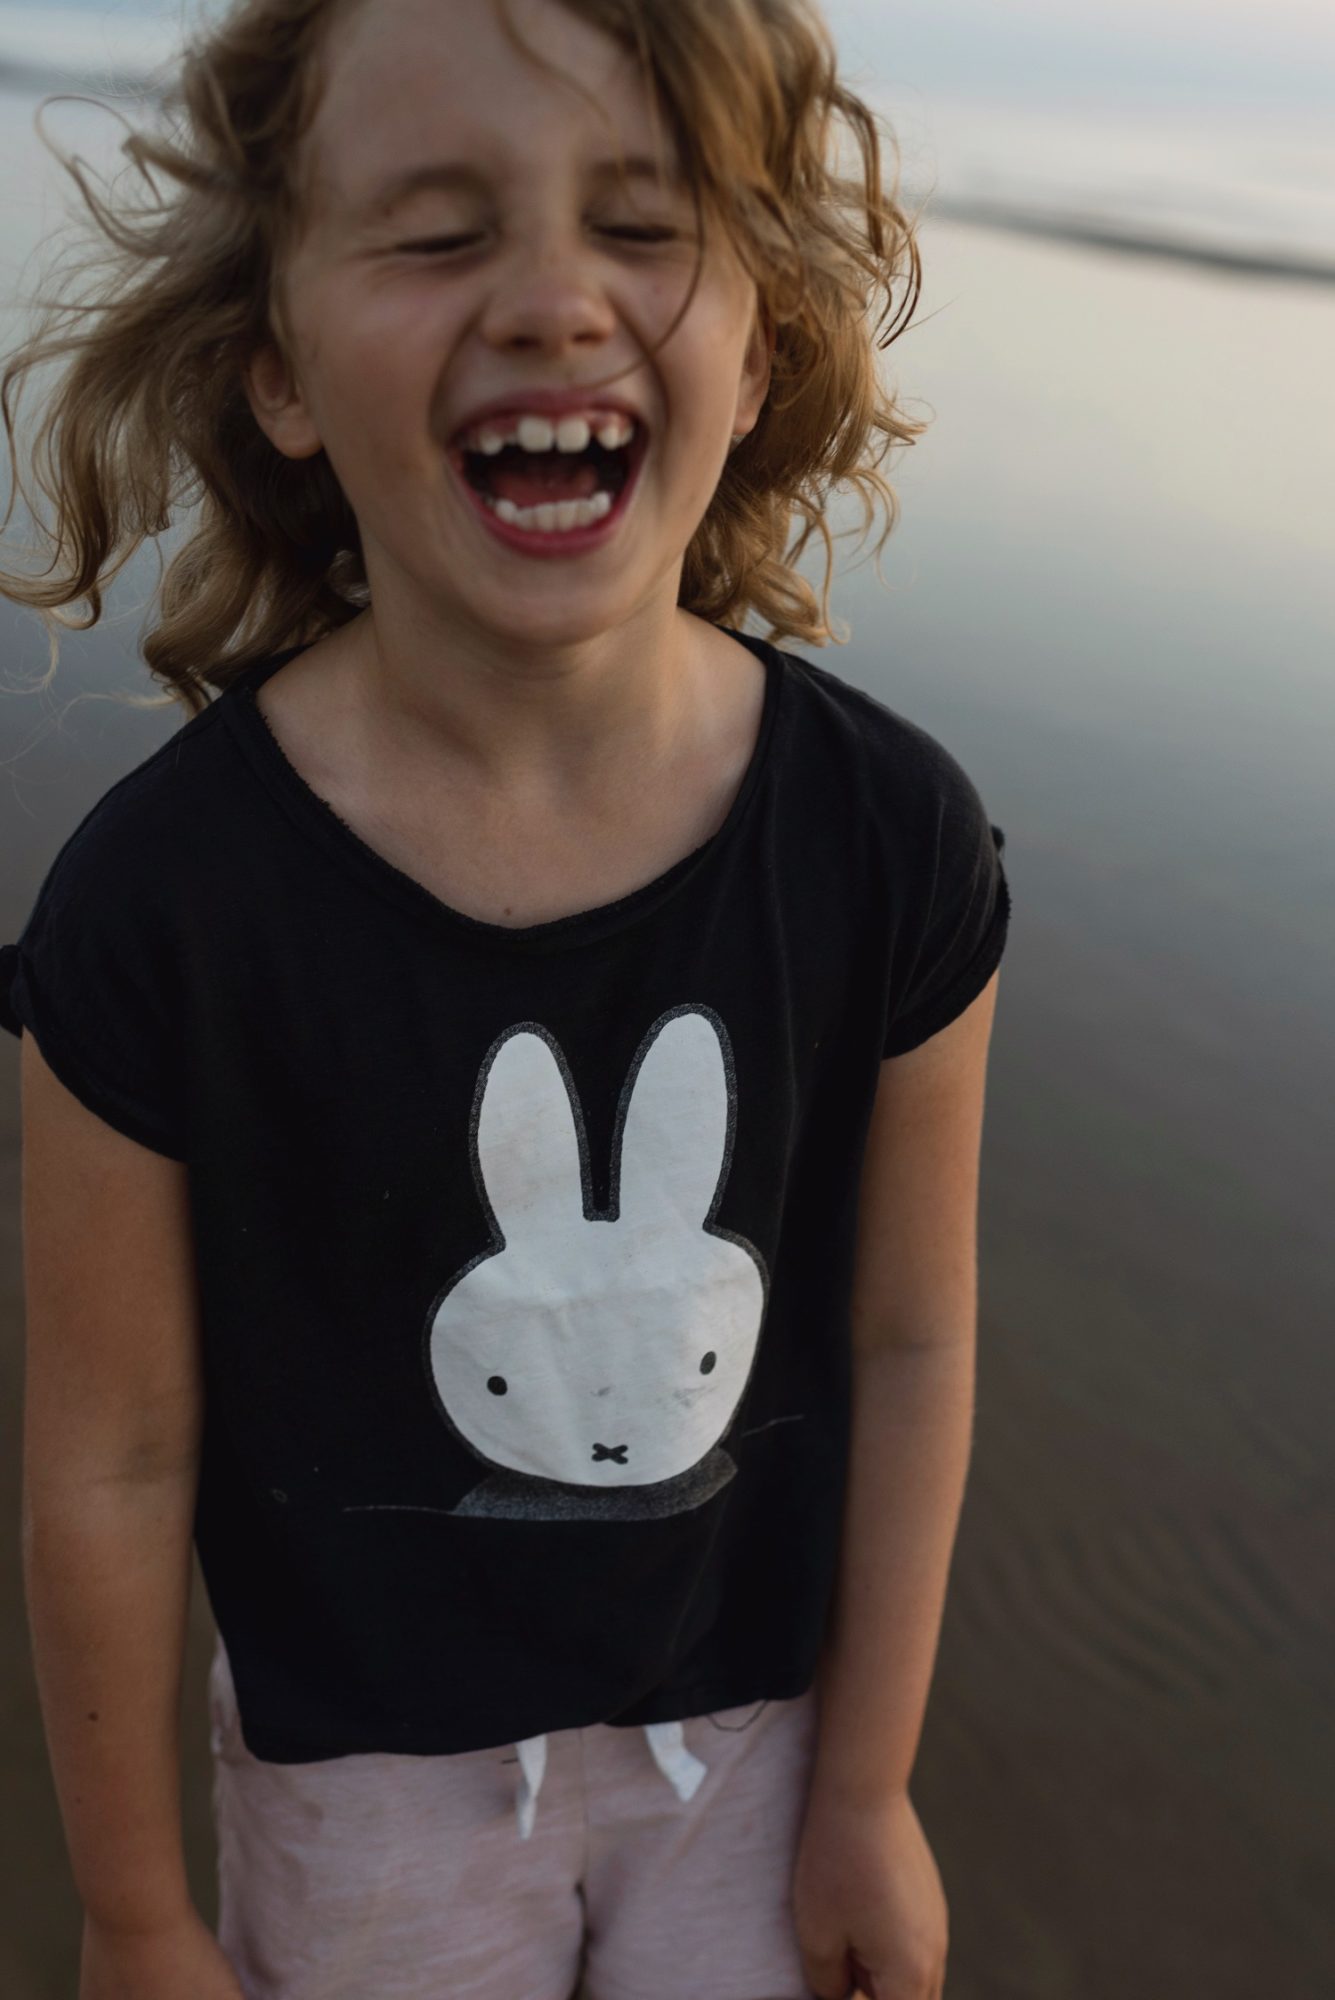 Titelbild zur Idee für die Beschäftigung mit Kindern '(30) Hasen T-Shirt gestalten'